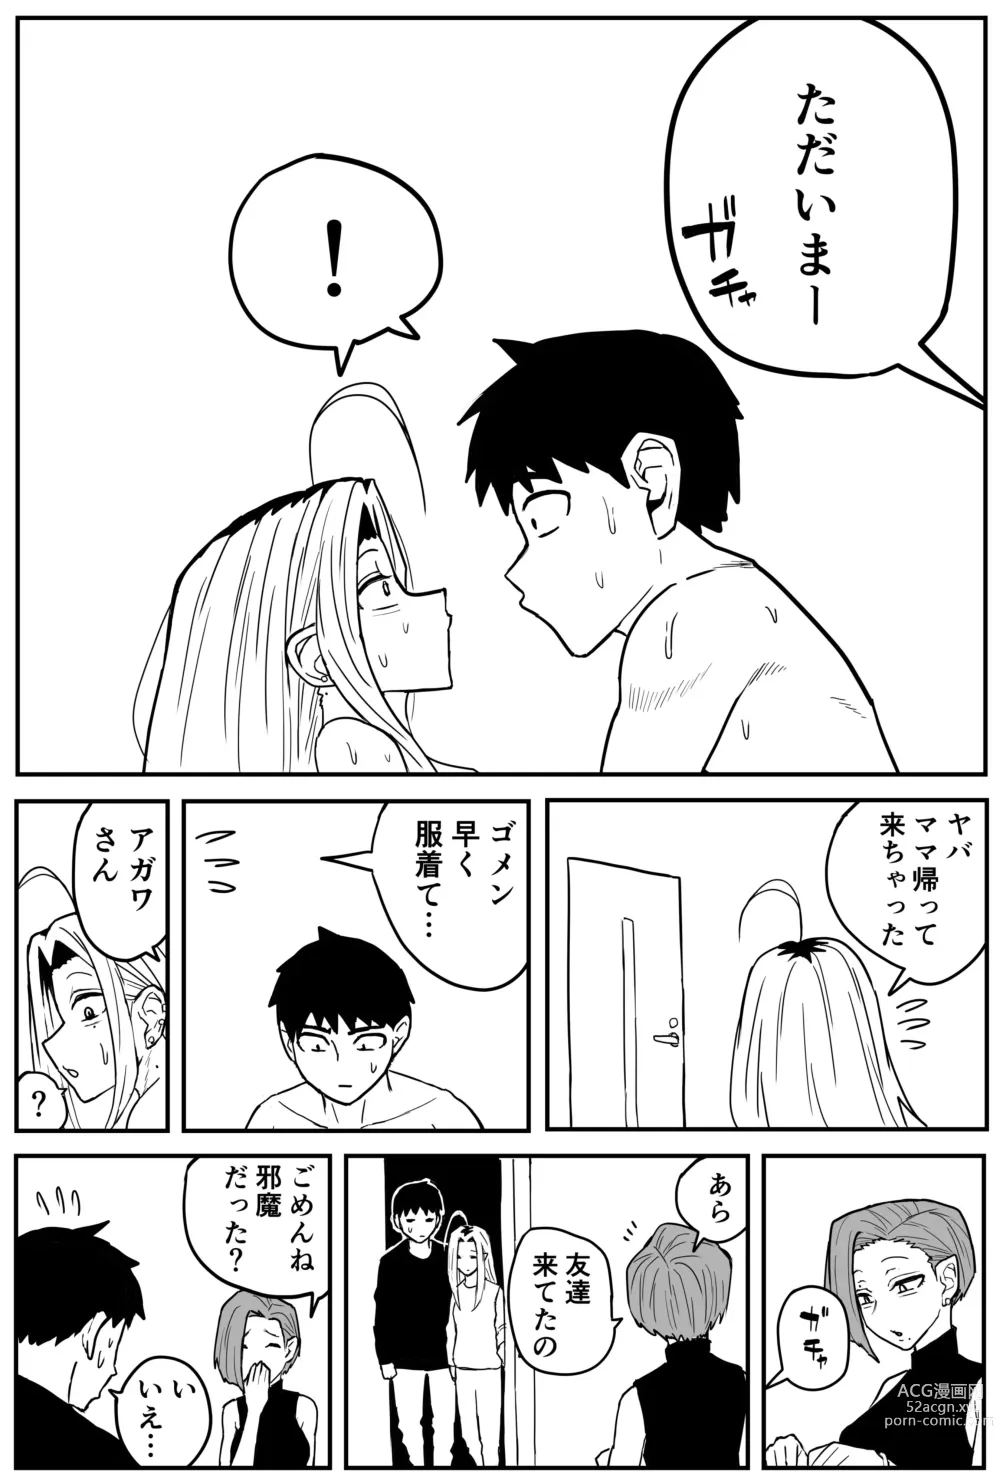 Page 333 of doujinshi Gal JK Ero Manga Ch.1-27